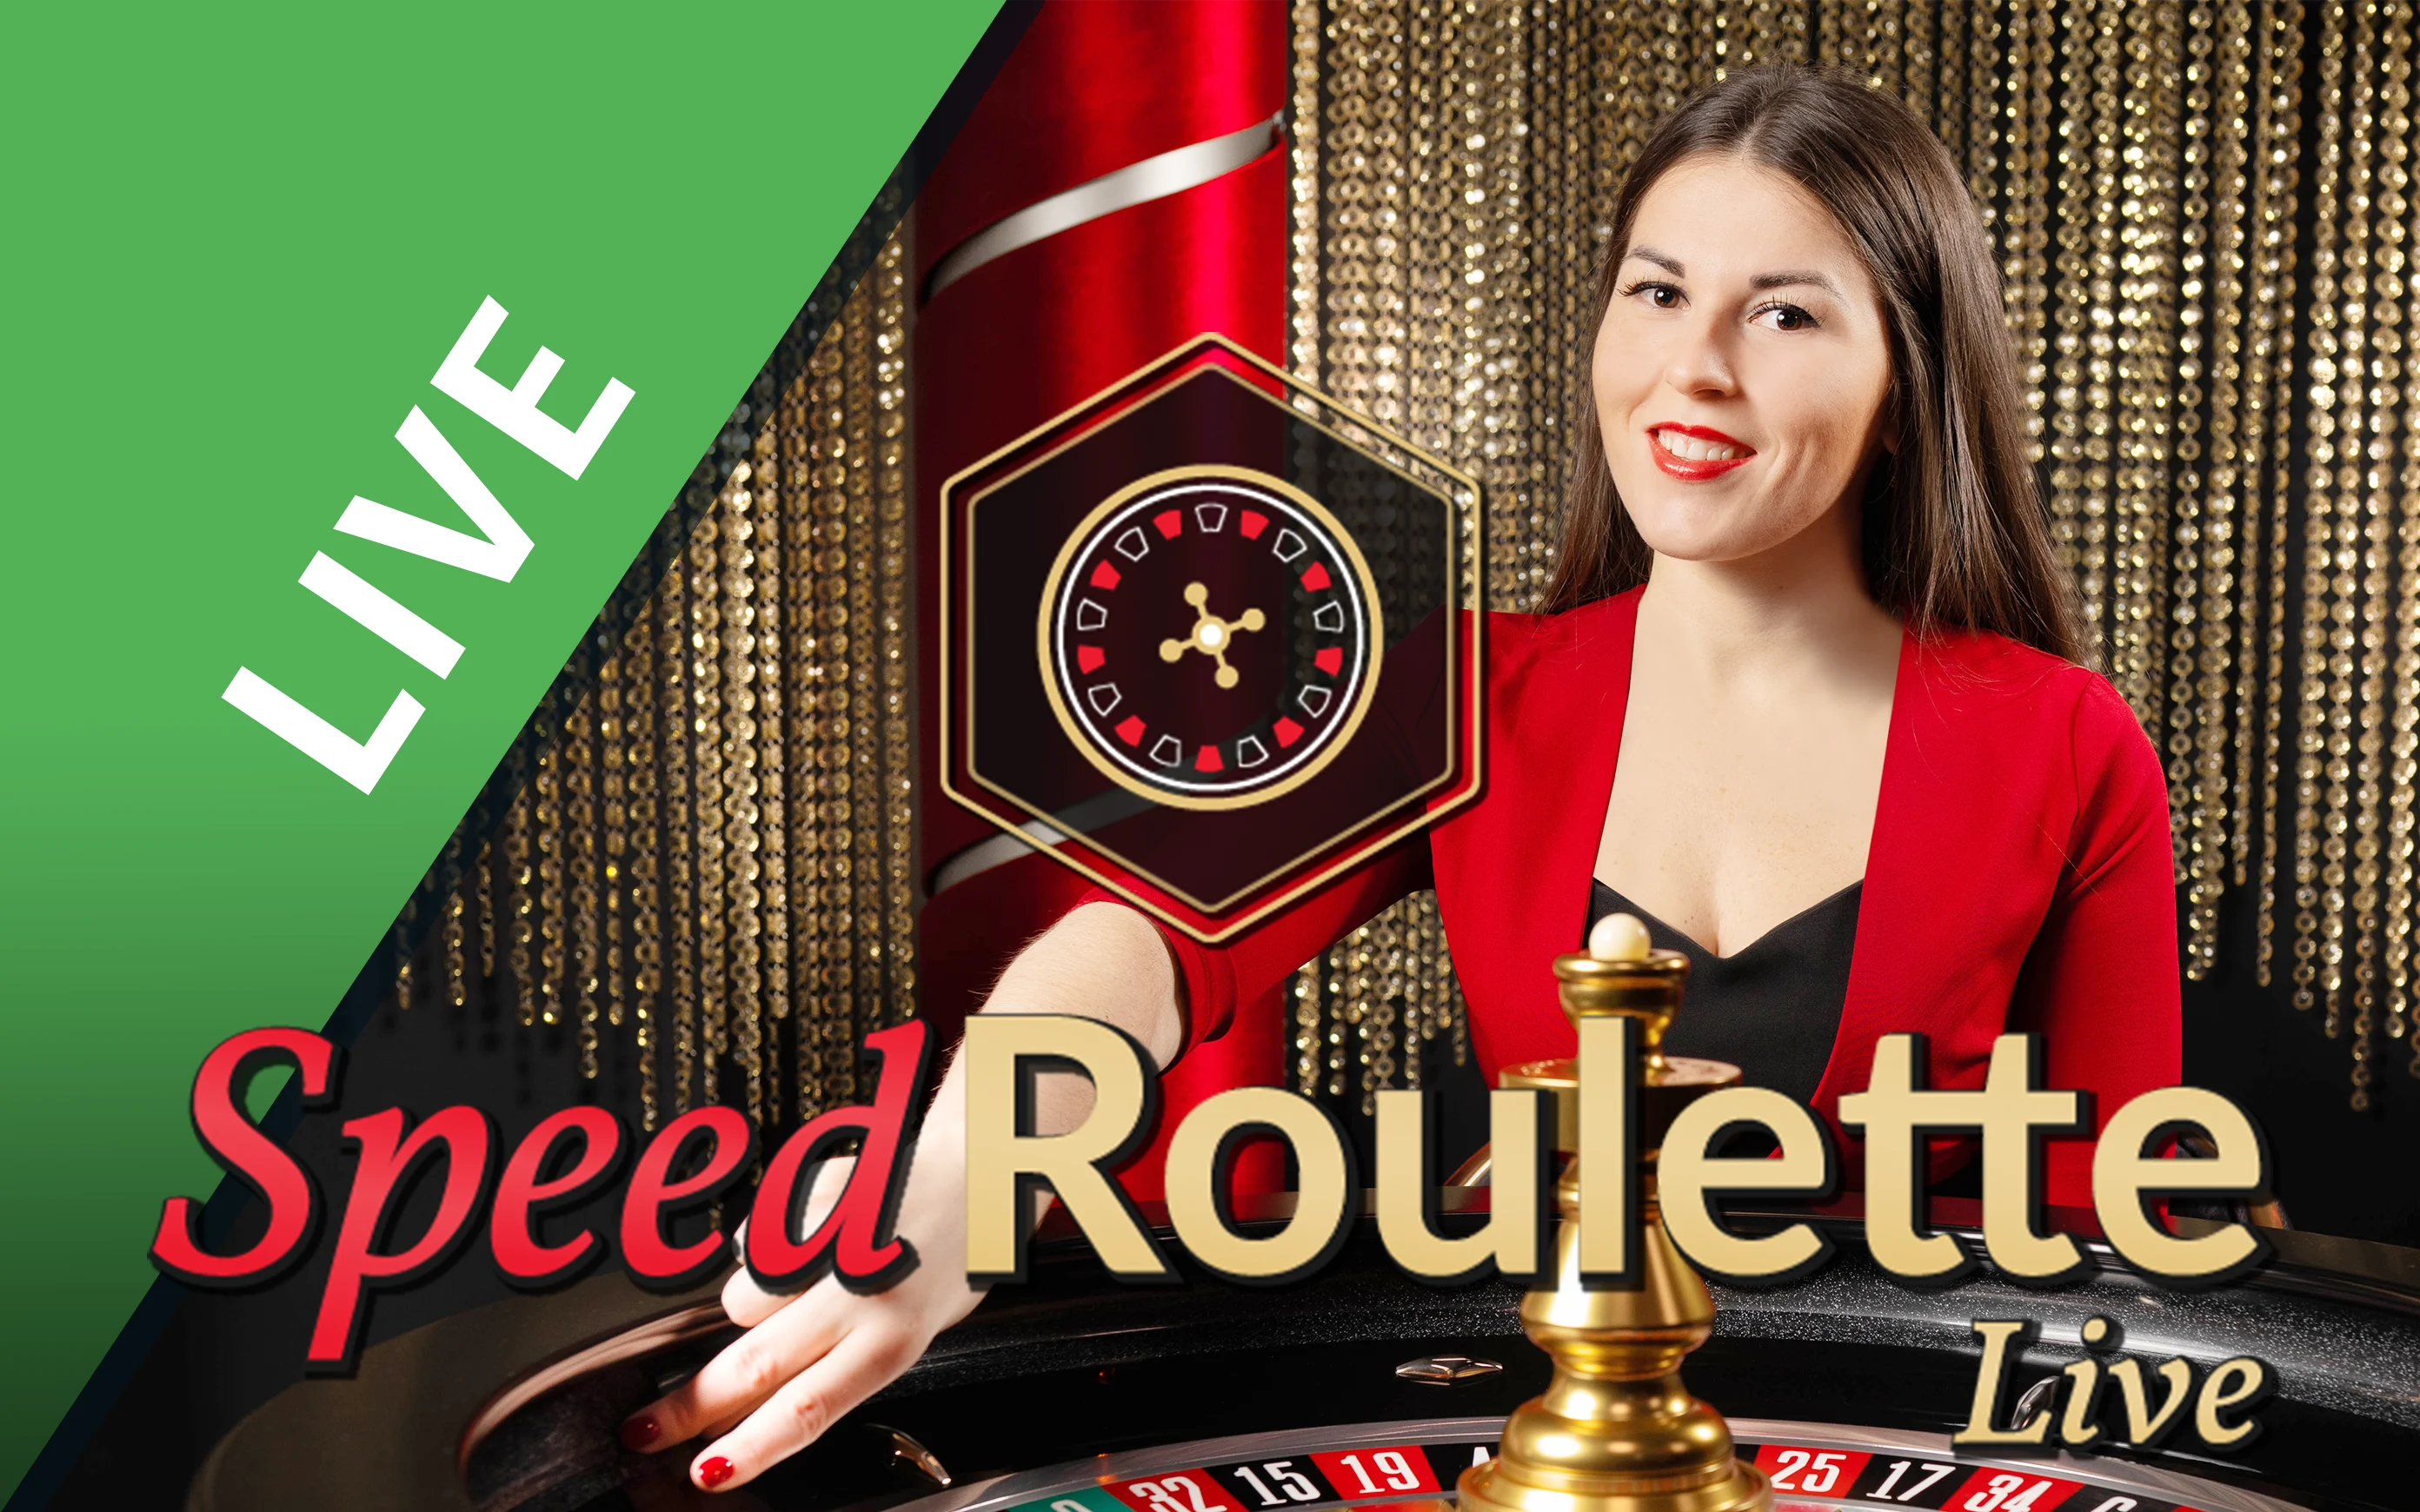 Play Speed Roulette on StarcasinoBE online casino